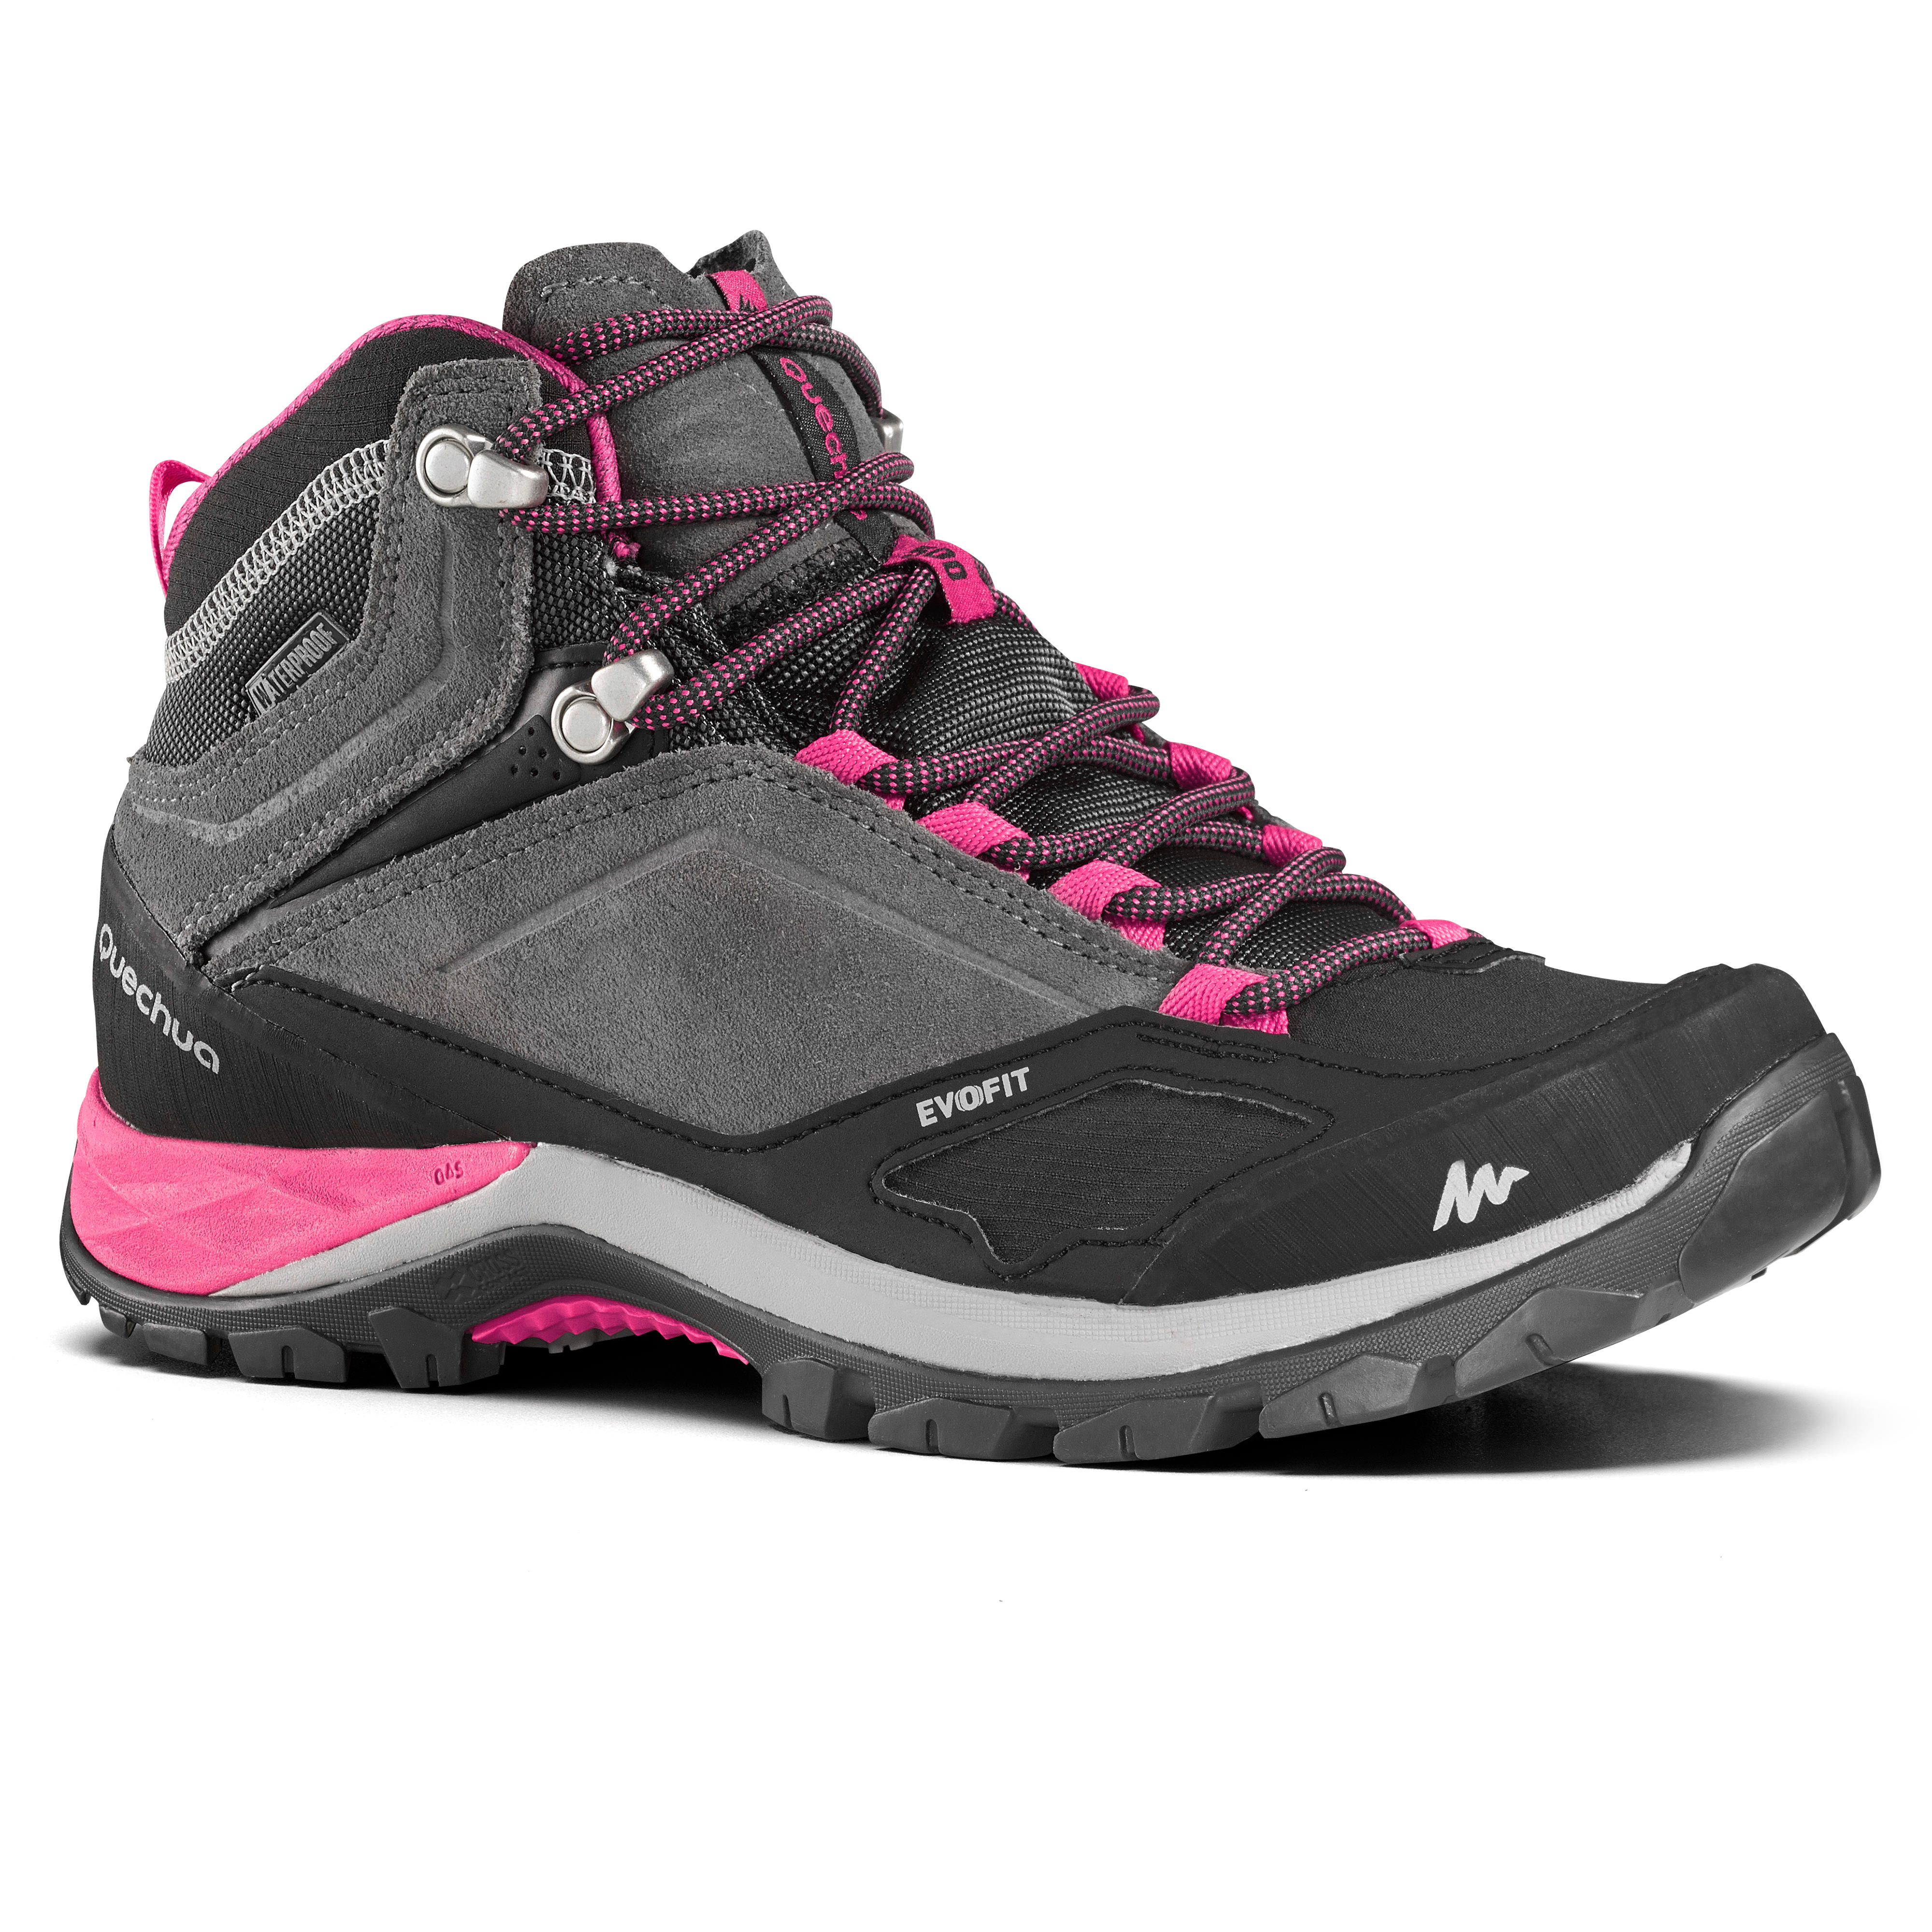 QUECHUA Chaussures imperméables de randonnée montagne - MH500 Mid Gris/Rose- Femme - QUECHUA - 40